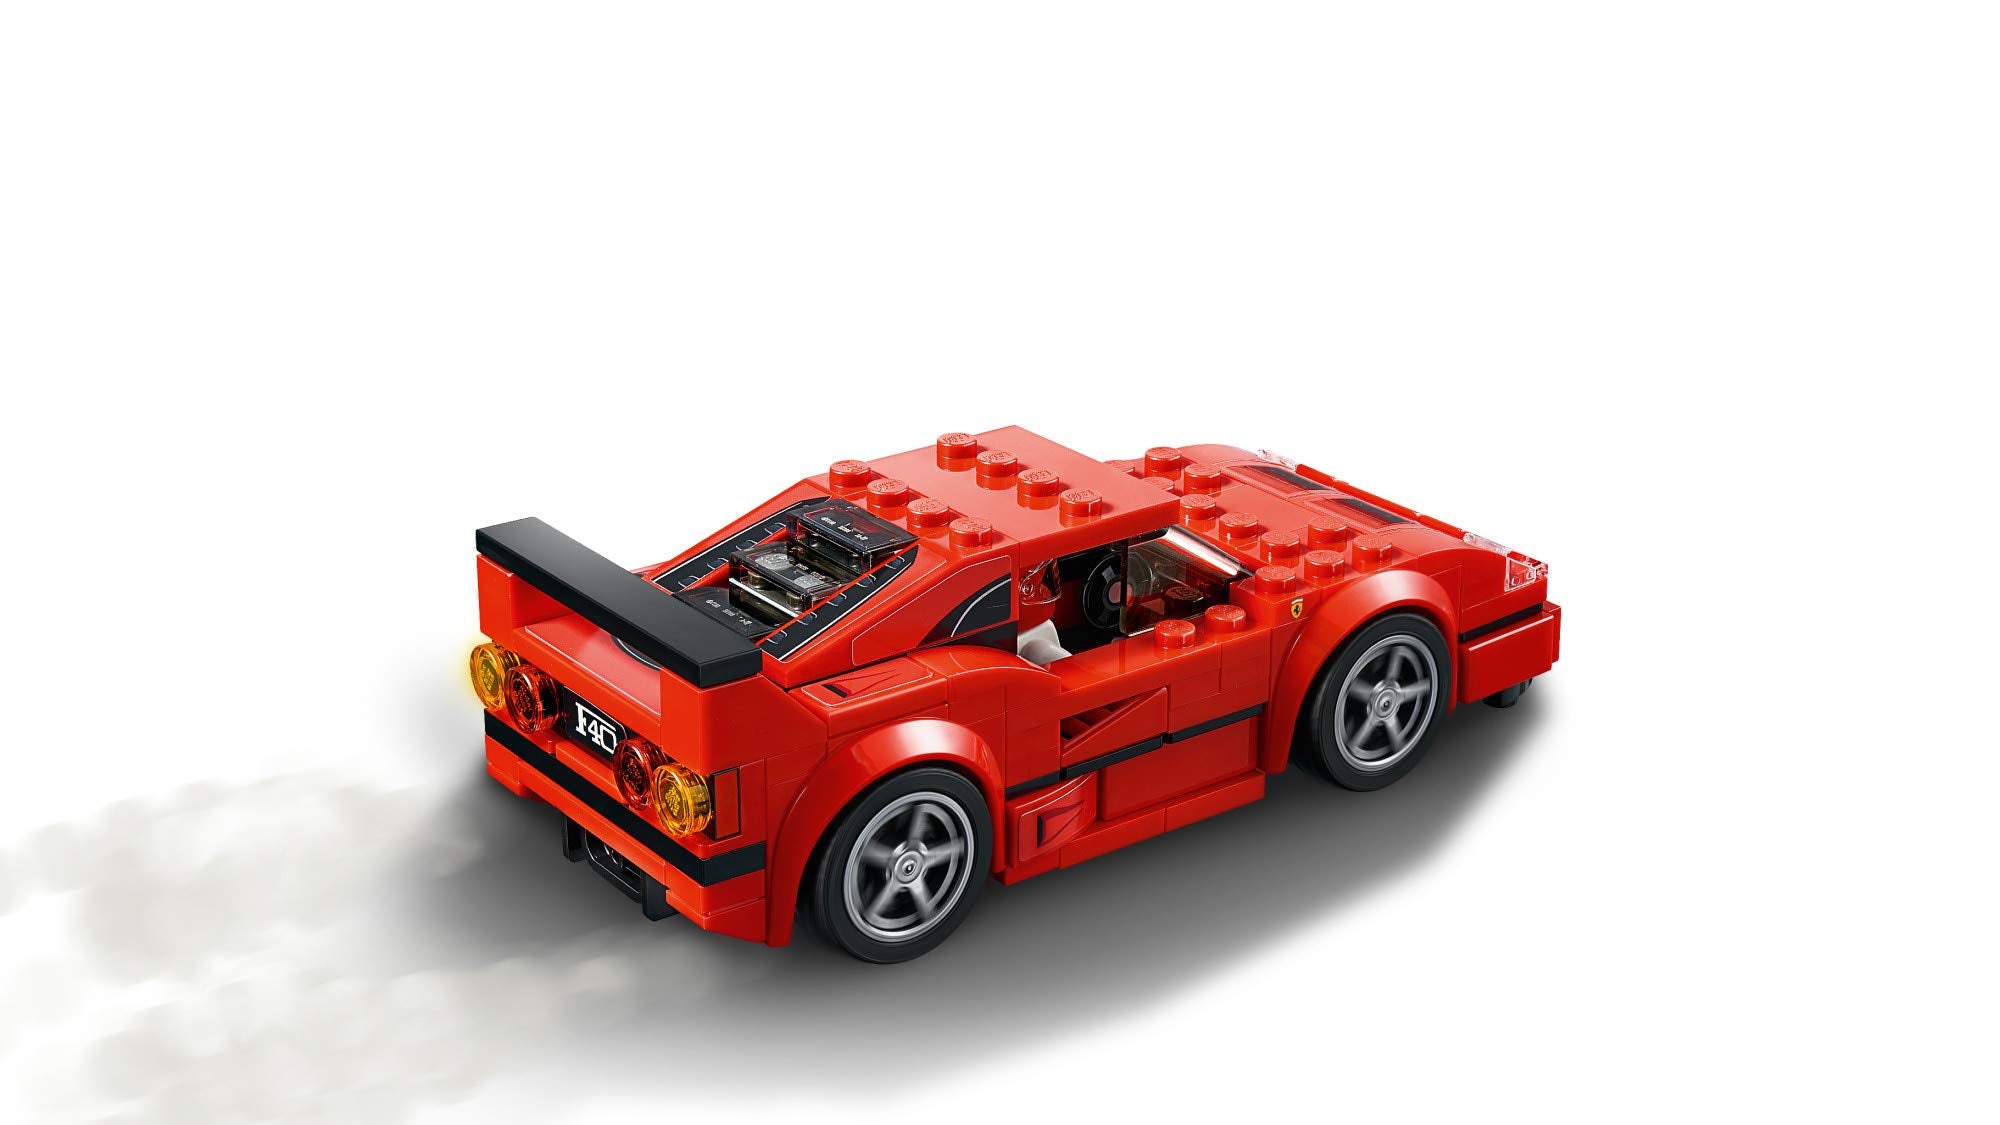 LEGO Speed Champions Ferrari F40 Competizione 75890 Building Kit